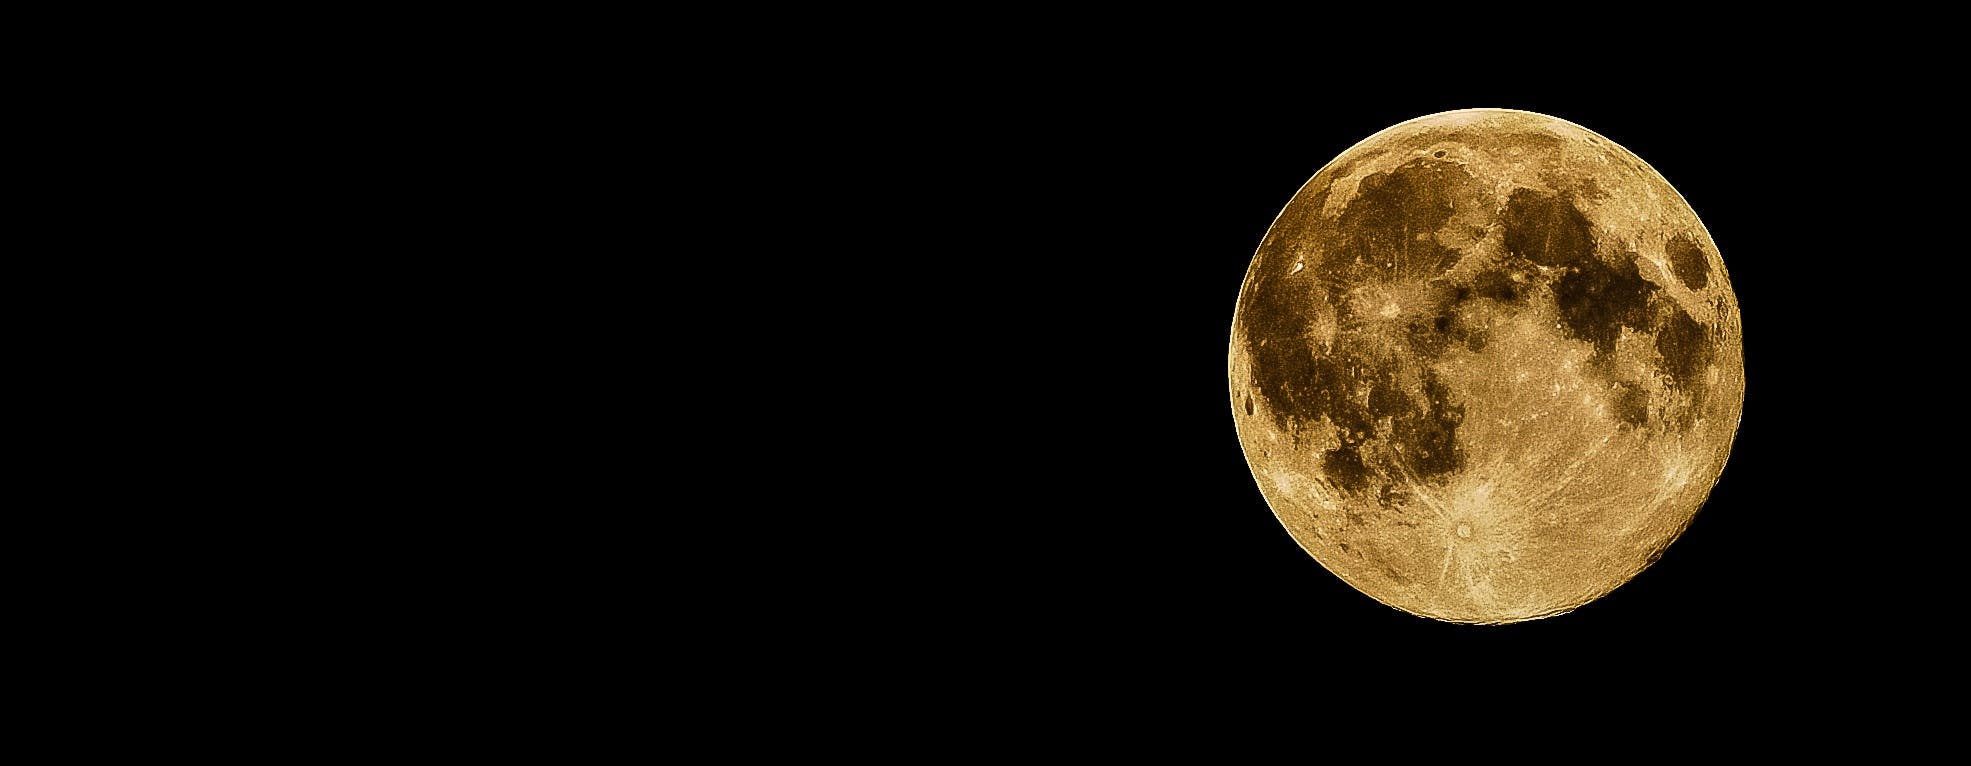 Hãy ngắm nhìn hình ảnh Full Moon Photos để tận hưởng sự trọn vẹn và đẹp đẽ của mặt trăng. Bạn sẽ được trải nghiệm sự tinh khiết và mạnh mẽ của trăng khi nó được chiếu sáng bởi ánh sáng trăng đầy mê hoặc. Hình ảnh này sẽ mang tới cho bạn sự bình yên và cảm giác thư giãn tuyệt vời.